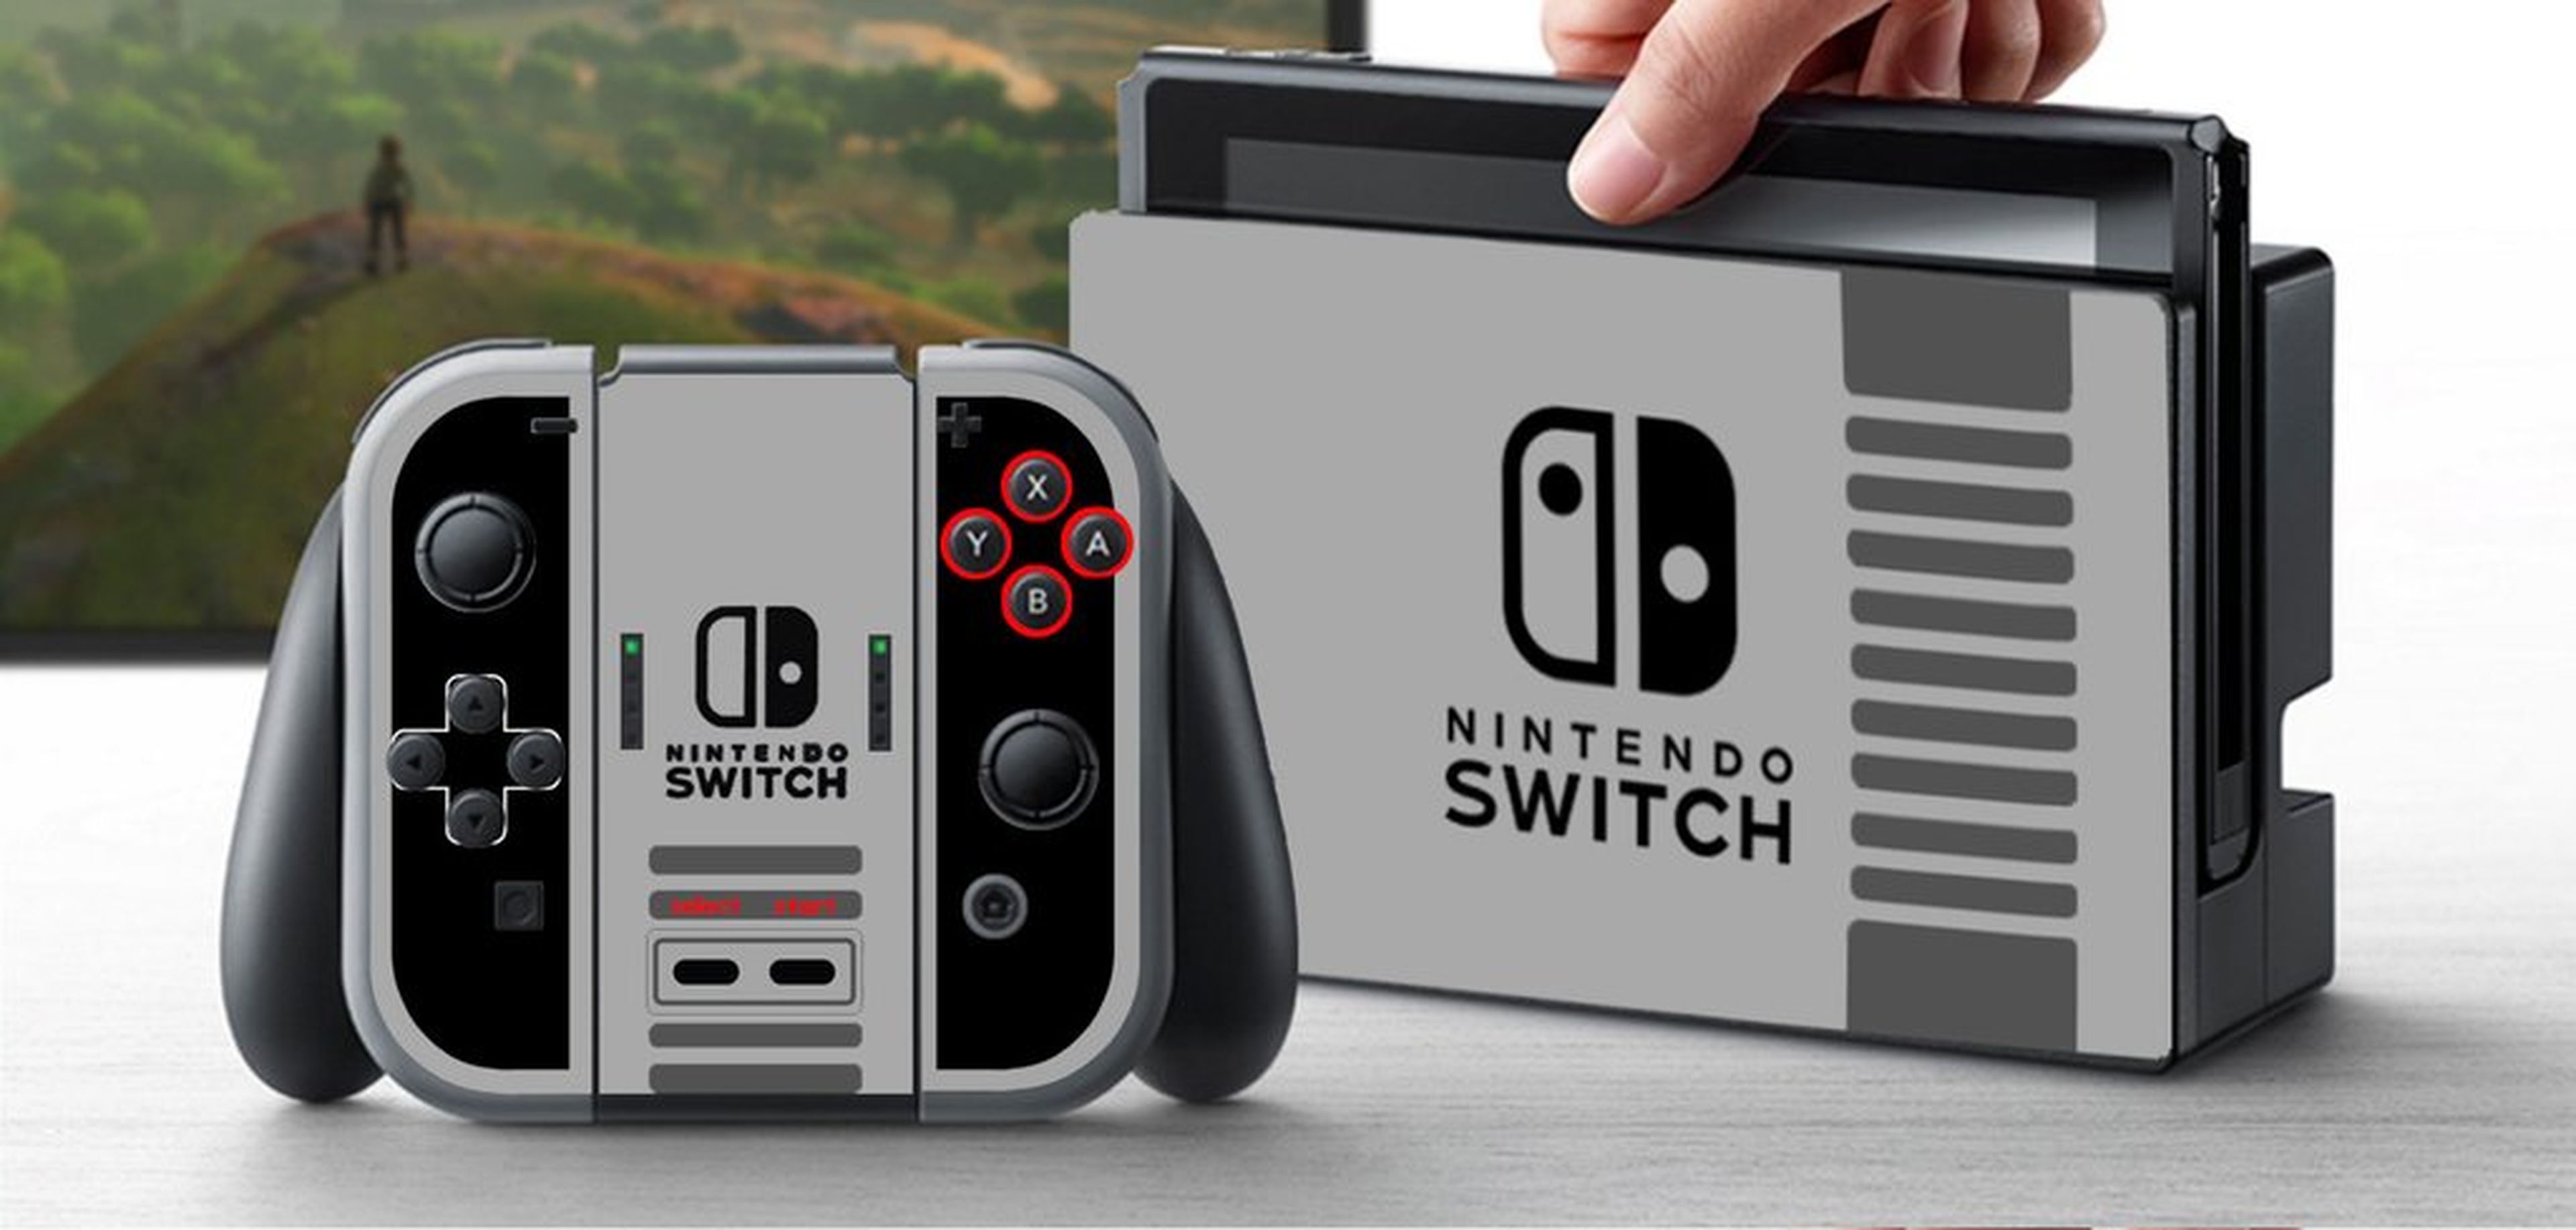 Nintendo Switch NES